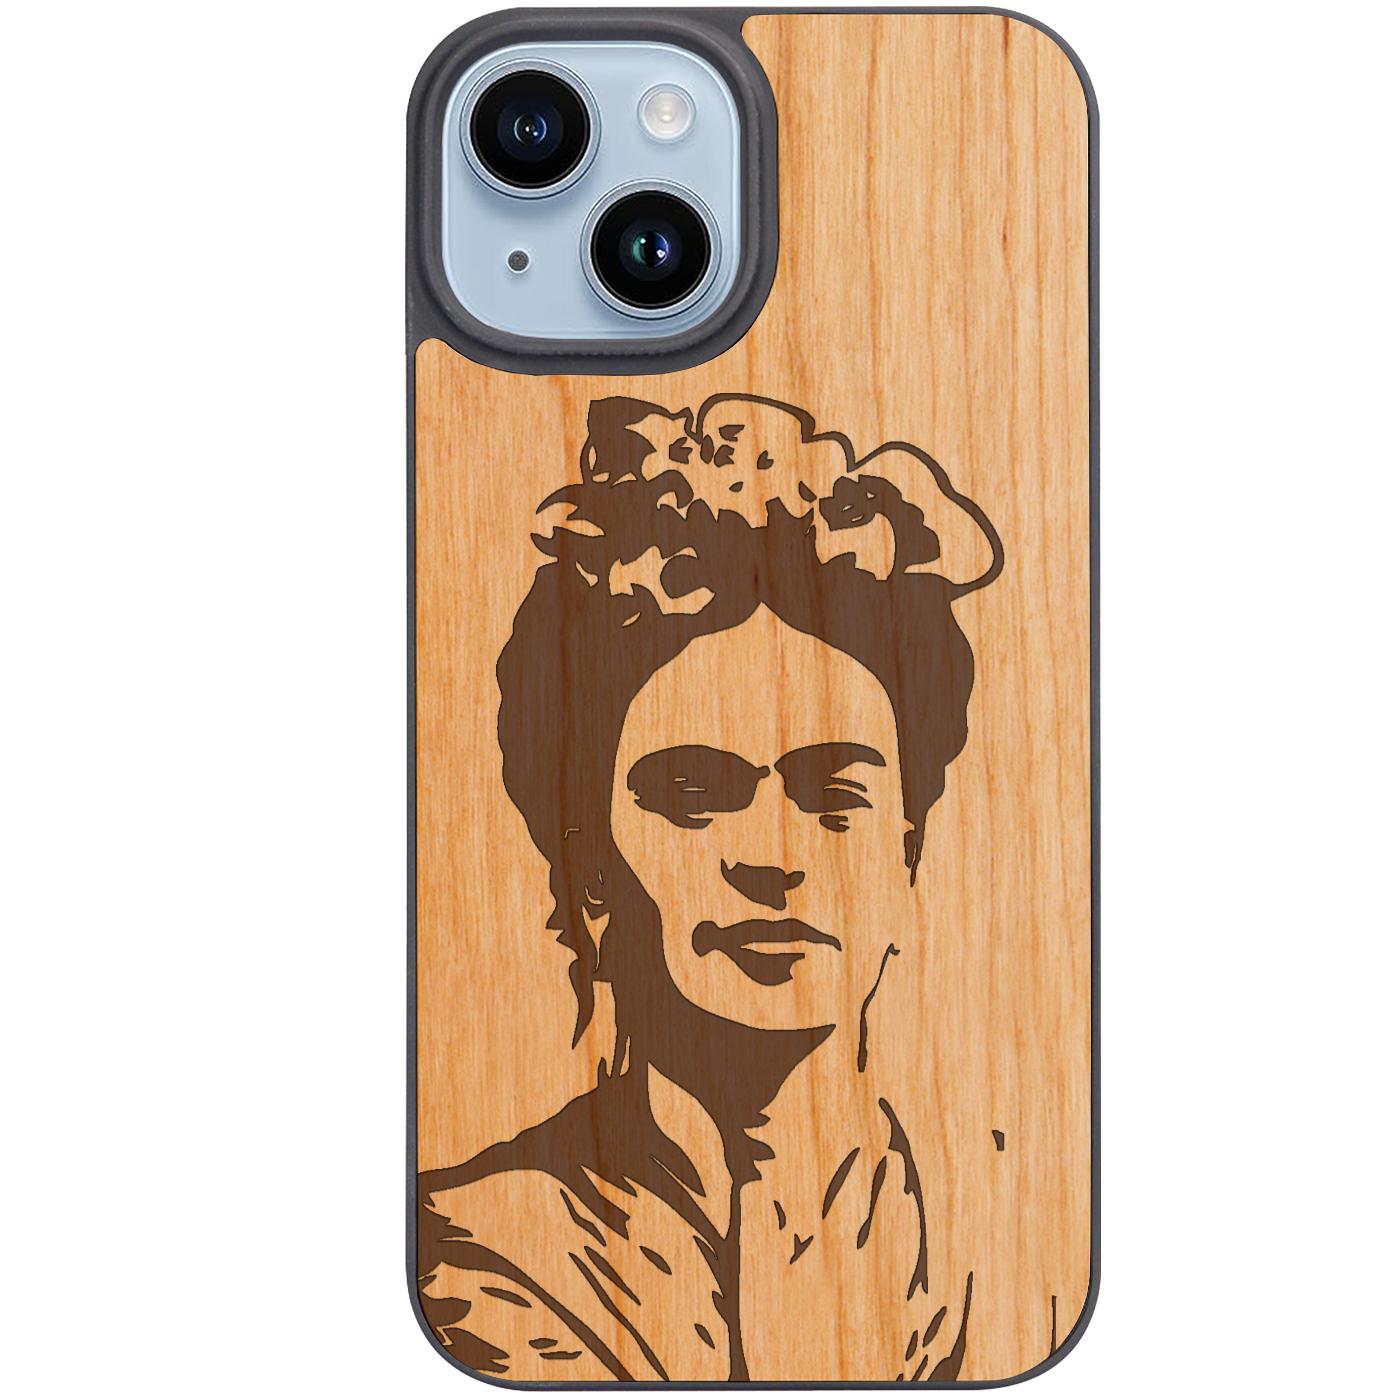 Frida Kahlo 2 - Engraved Phone Case